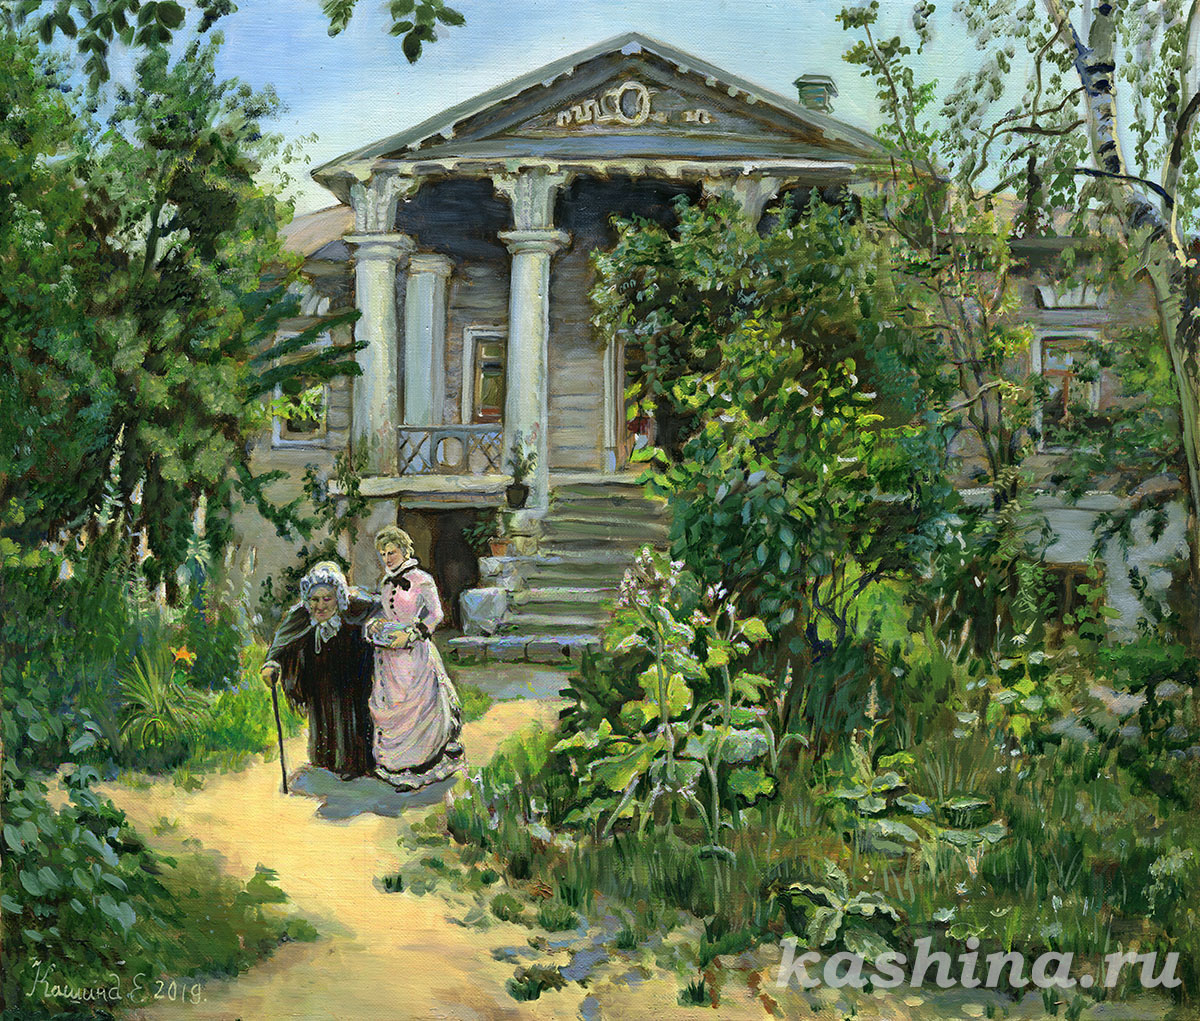 "Бабушкин сад", копия картины Поленова, Евгения Кашина